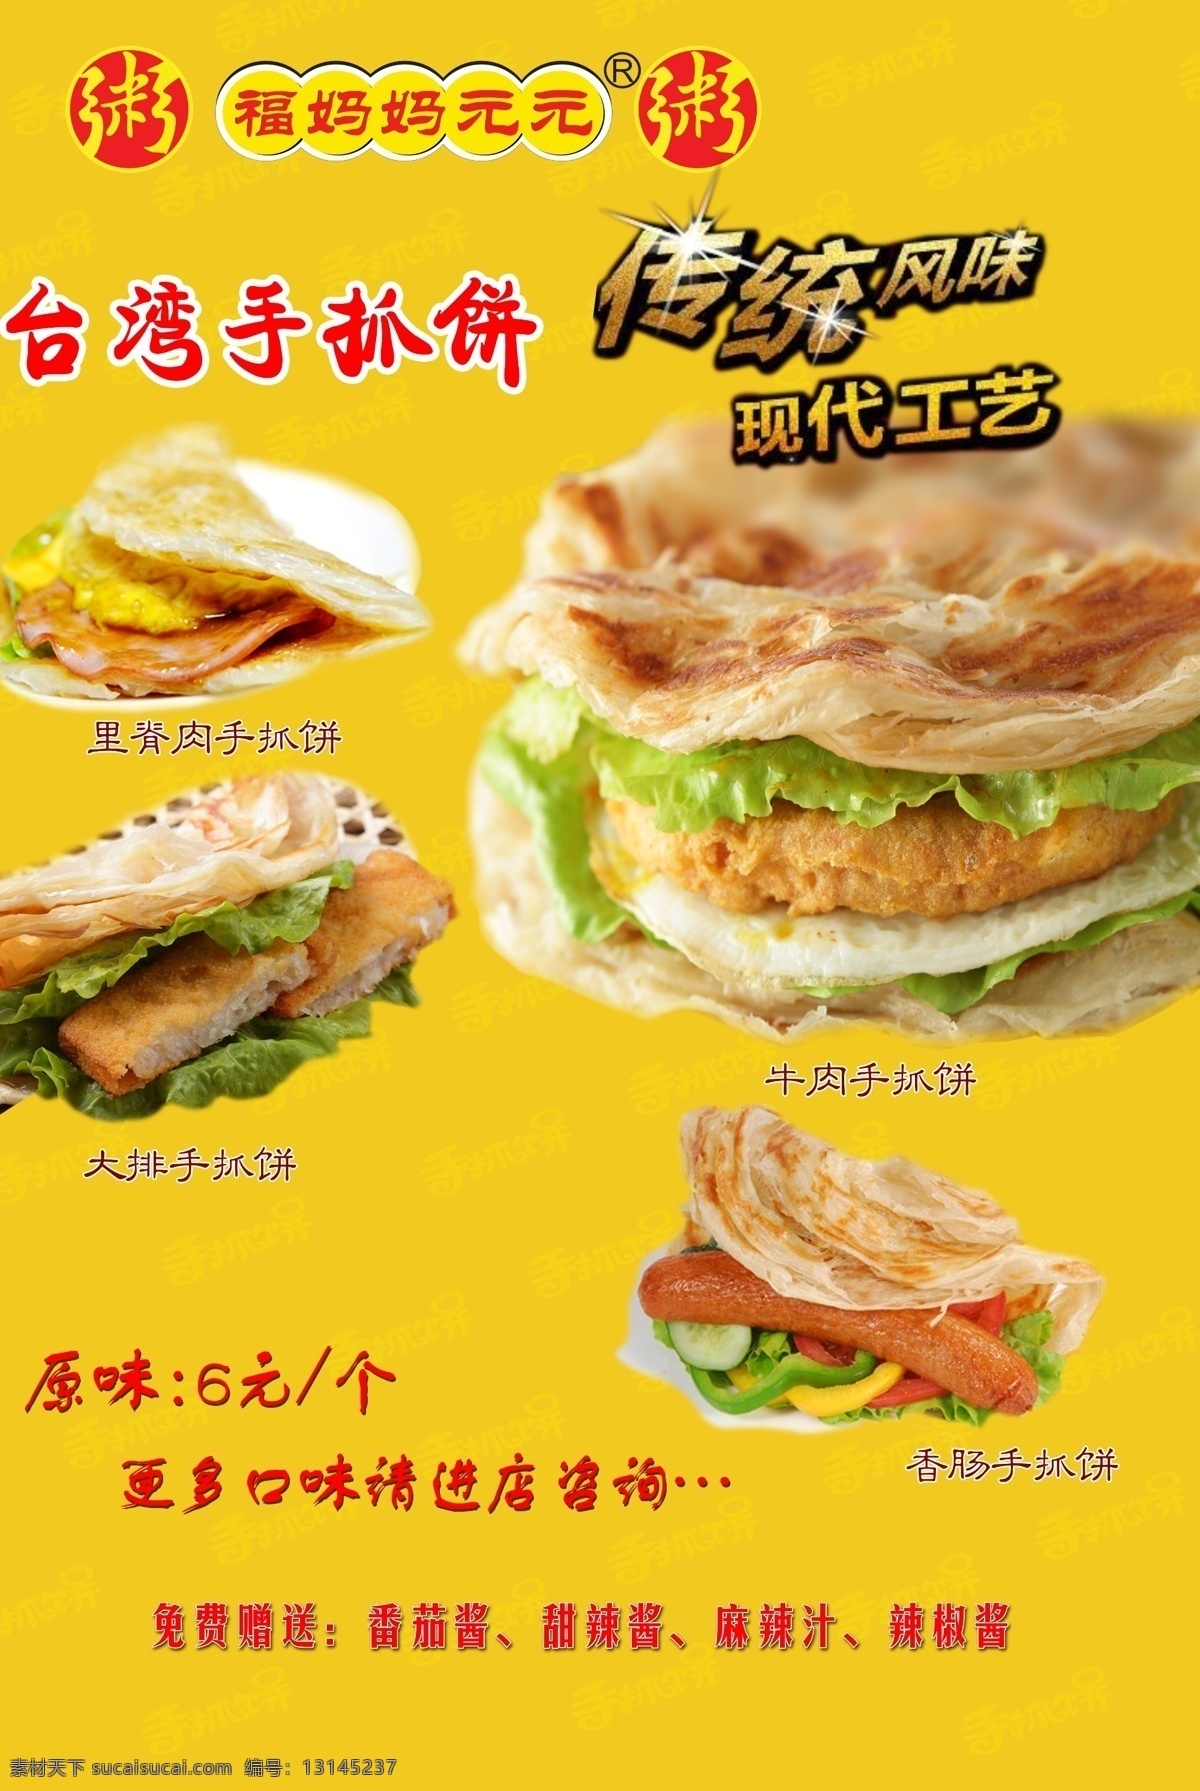 手抓饼 海报 模板 火腿 烤肠 台湾 永和 豆浆 招牌 logo